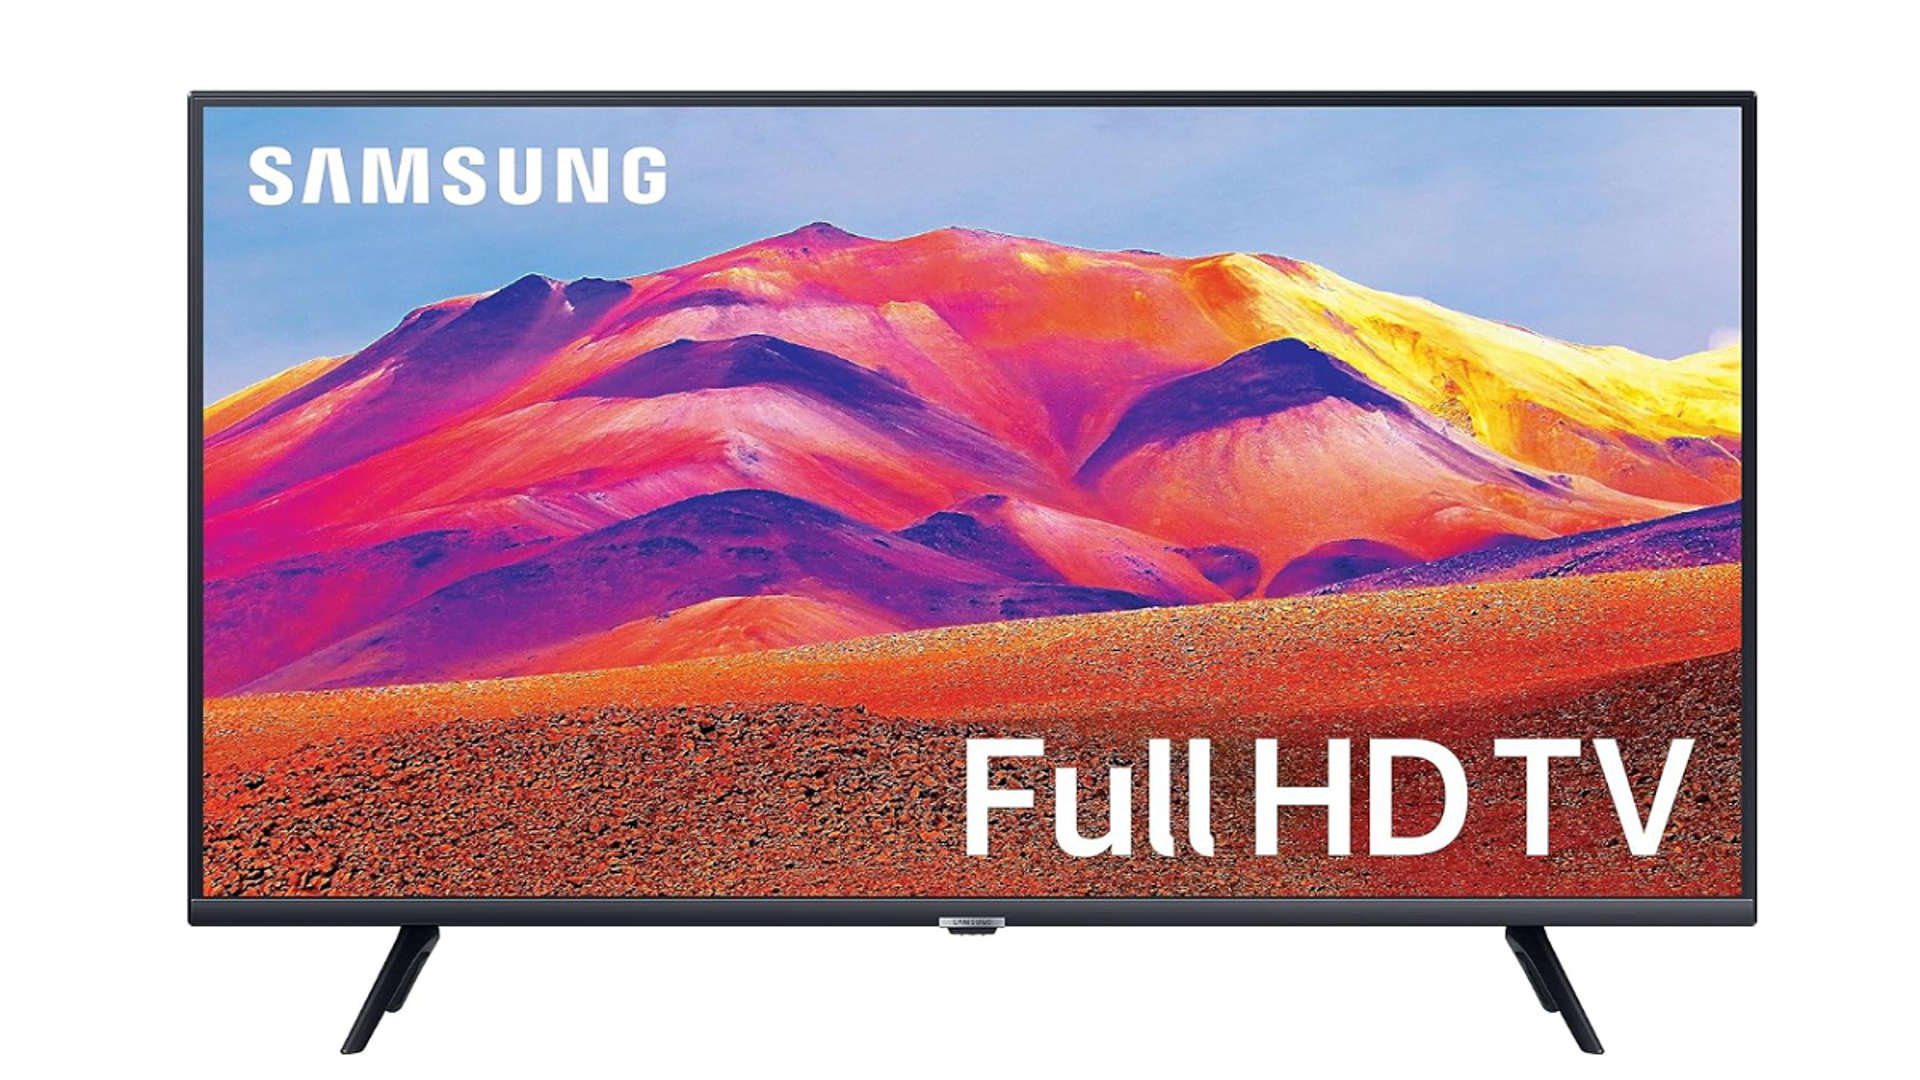 Best Samsung Smart TV in India